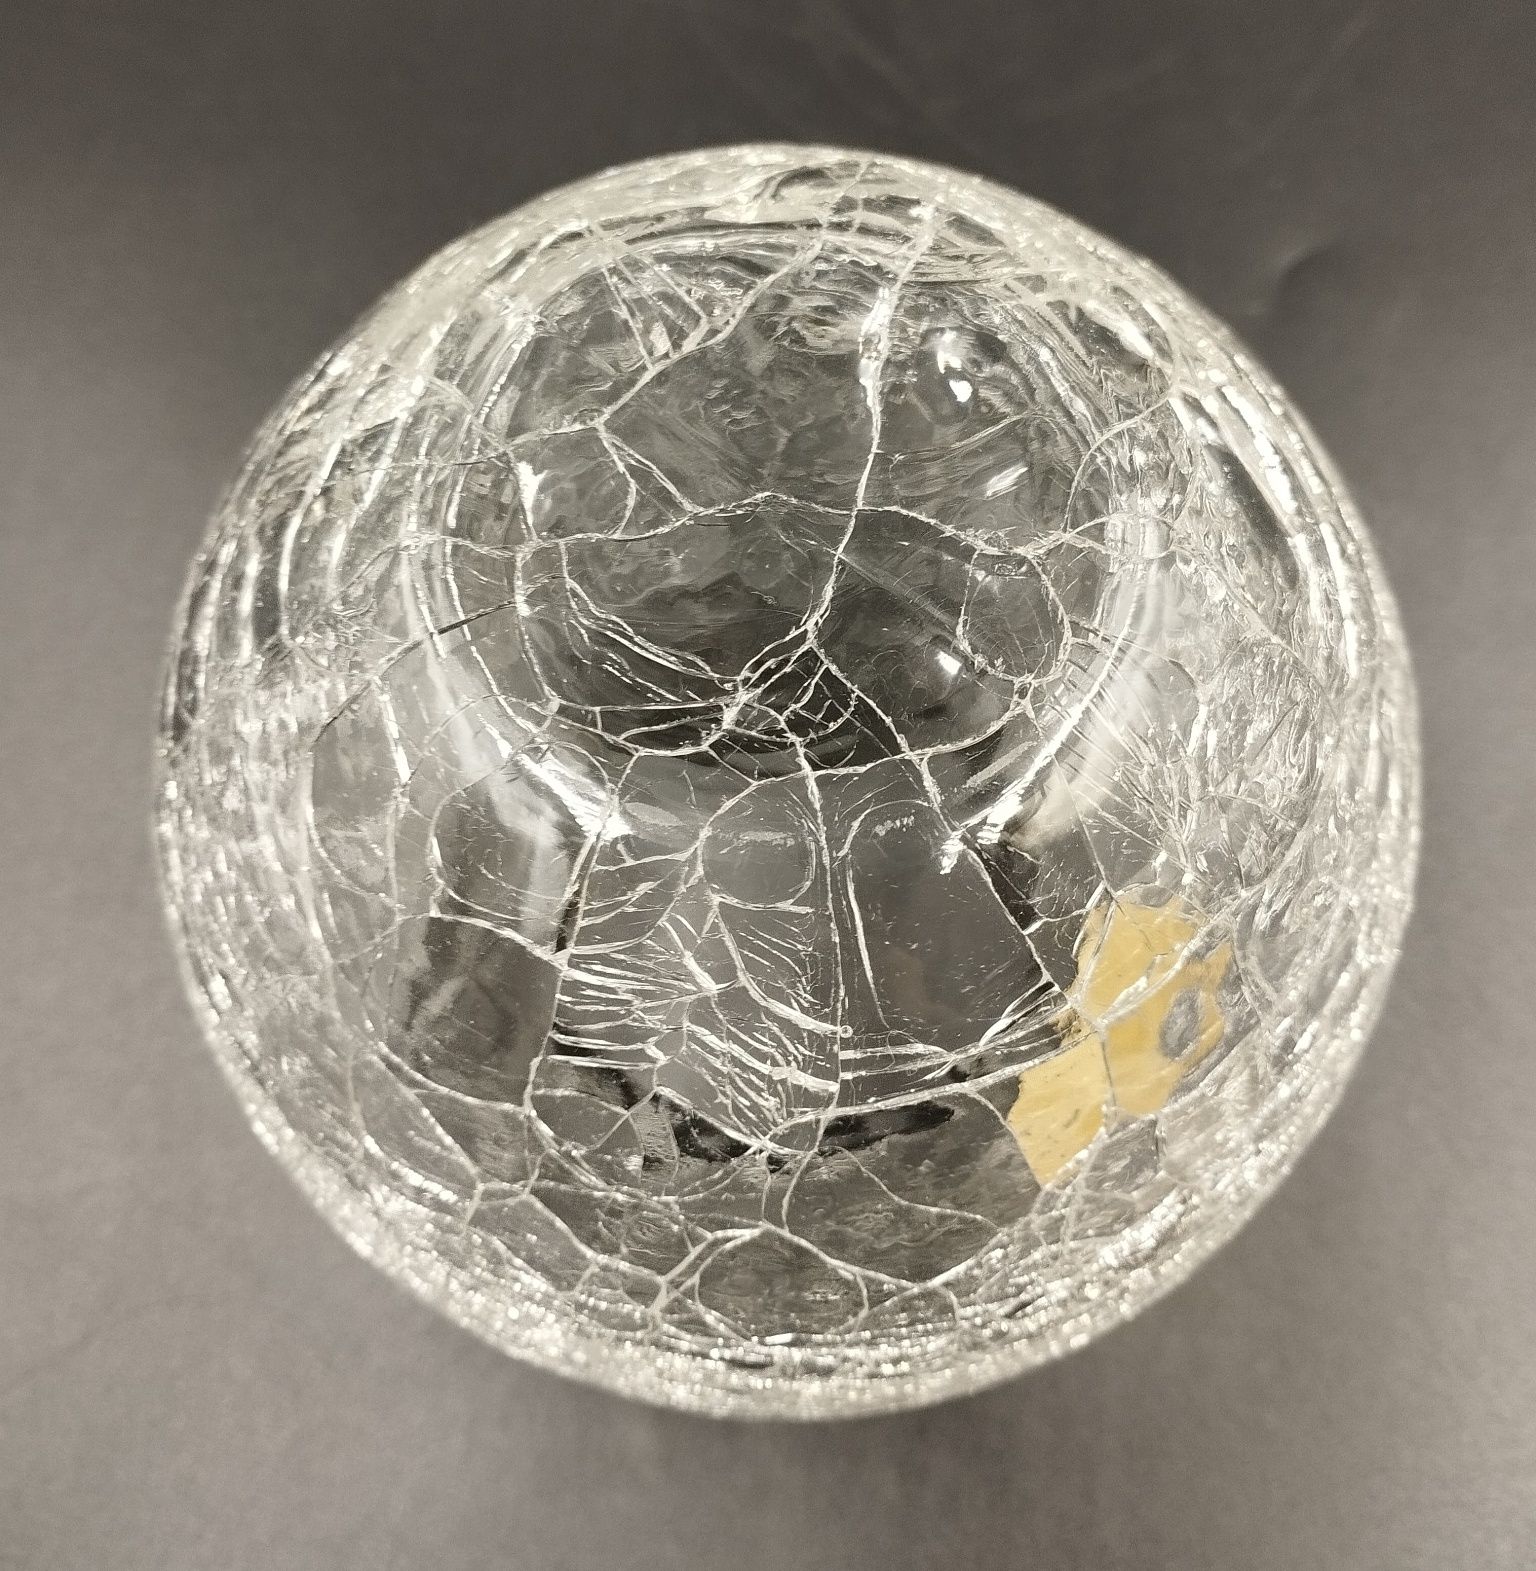 Wazon crackle glass szkło retro design vintage